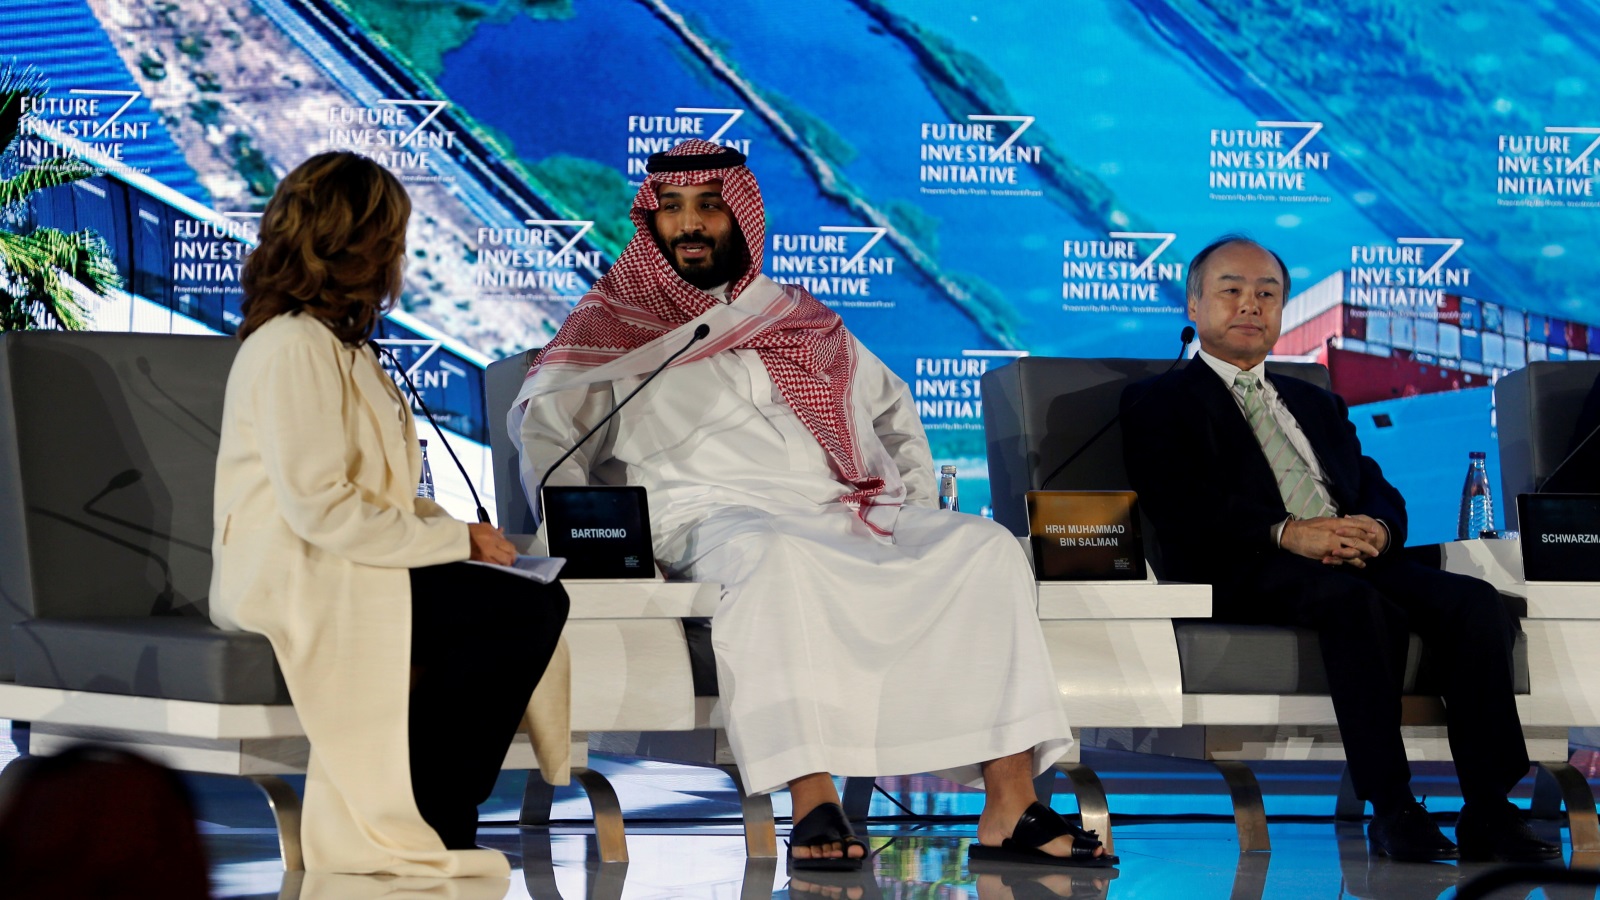 ولي العهد السعودي يحضر مؤتمر مبادرة استثمار المستقبل بالرياض يوم 24 أكتوبر/تشرين الأول 2017 (رويترز)